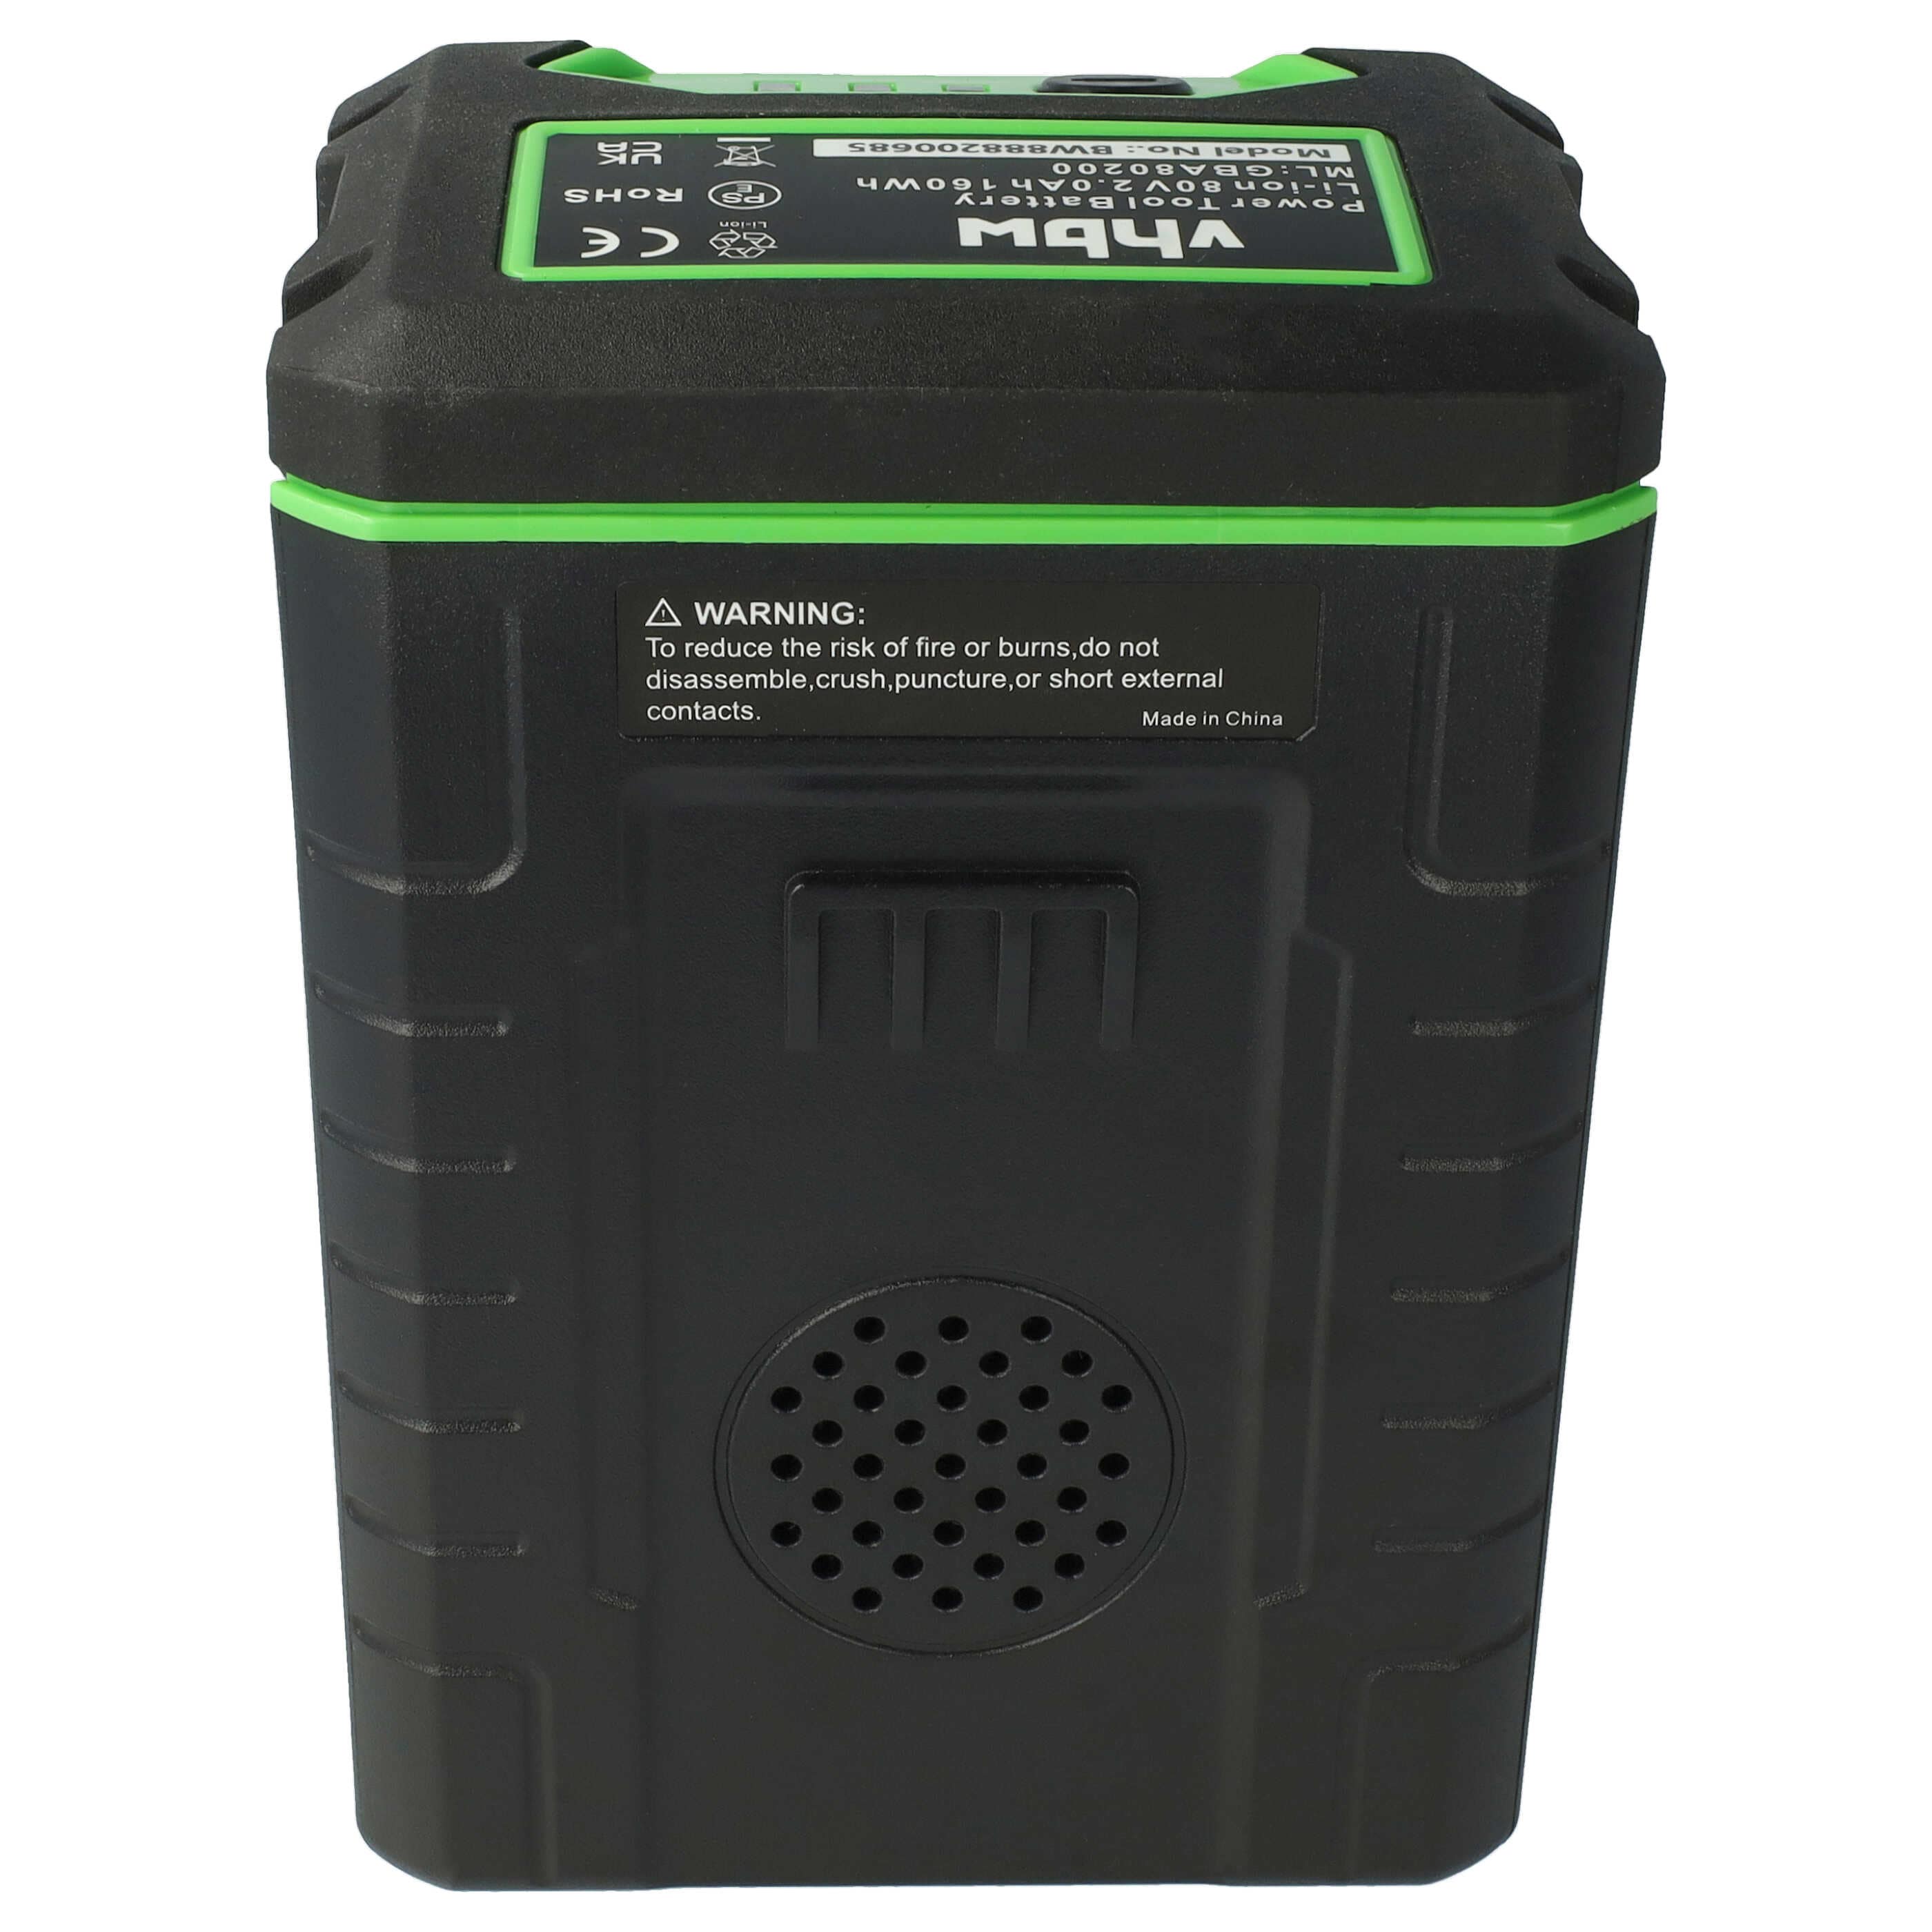 Batteria sostituisce Greenworks 2901307, 2902407 per dispositivo da giardinaggio Cramer - 2000mAh 80V Li-Ion